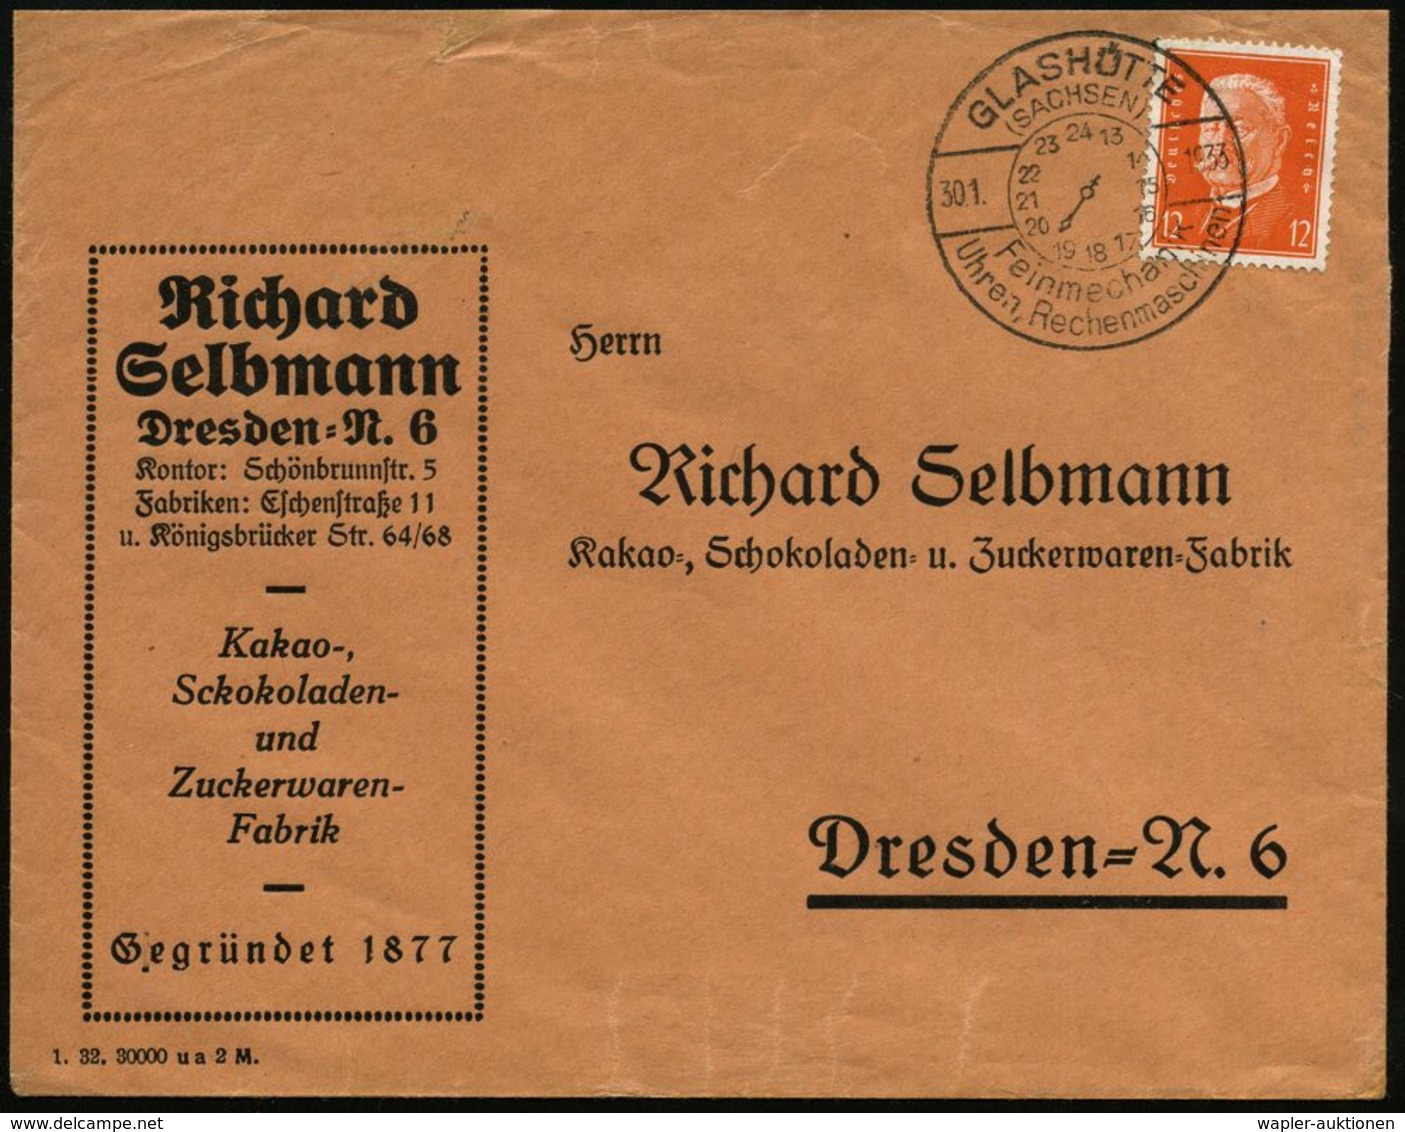 UHR / ZEITMESSUNG : GLASHÜTTE/ (SACHSEN)/ Feinmechanik/ Uhren,Rechenmaschinen 1933 (30.1.) HWSt Mit Zifferblatt (13-24 U - Clocks